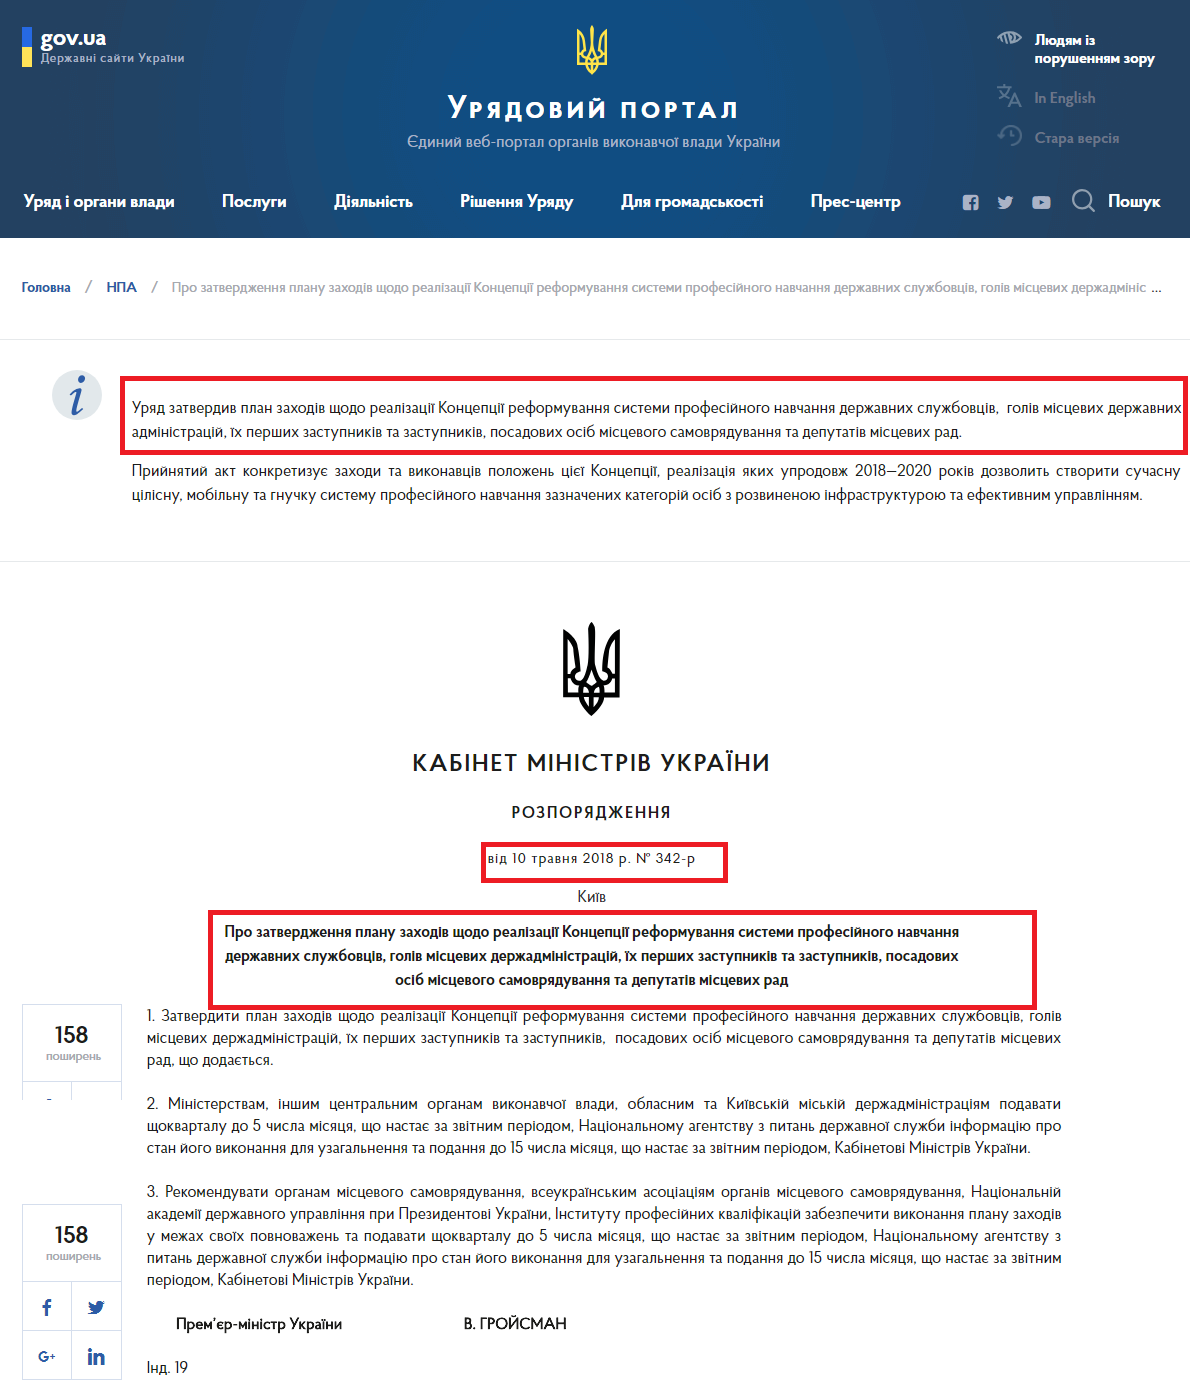 https://www.kmu.gov.ua/ua/npas/pro-zatverdzhennya-planu-zahodiv-shodo-realizaciyi-koncepciyi-reformuvannya-sistemi-